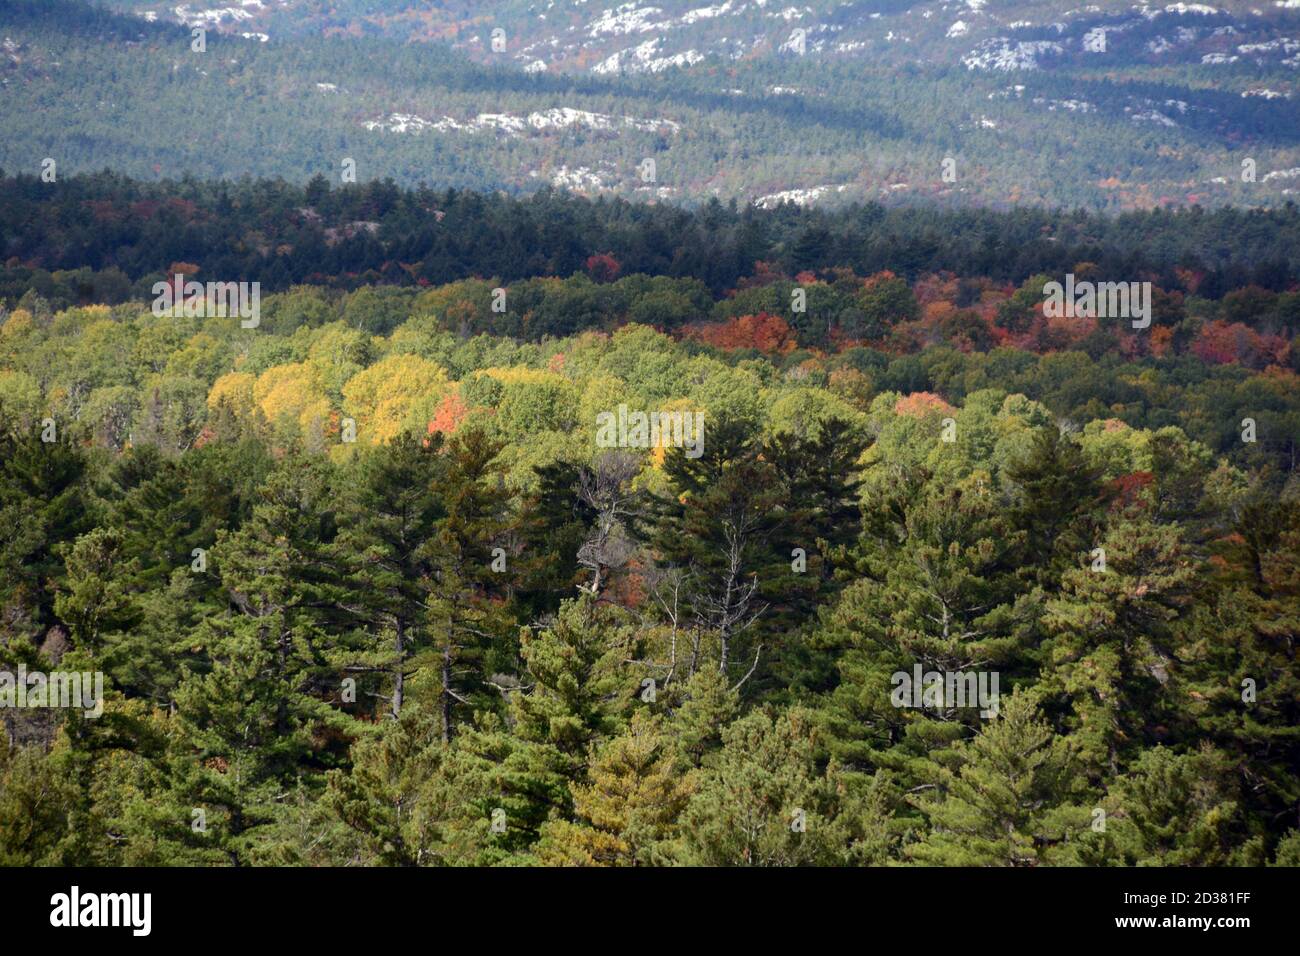 Colori autunnali degli alberi in una foresta mista di conifere e decidui, tra le colline quarzite del Killarney Provincial Park, Ontario, Canada. Foto Stock